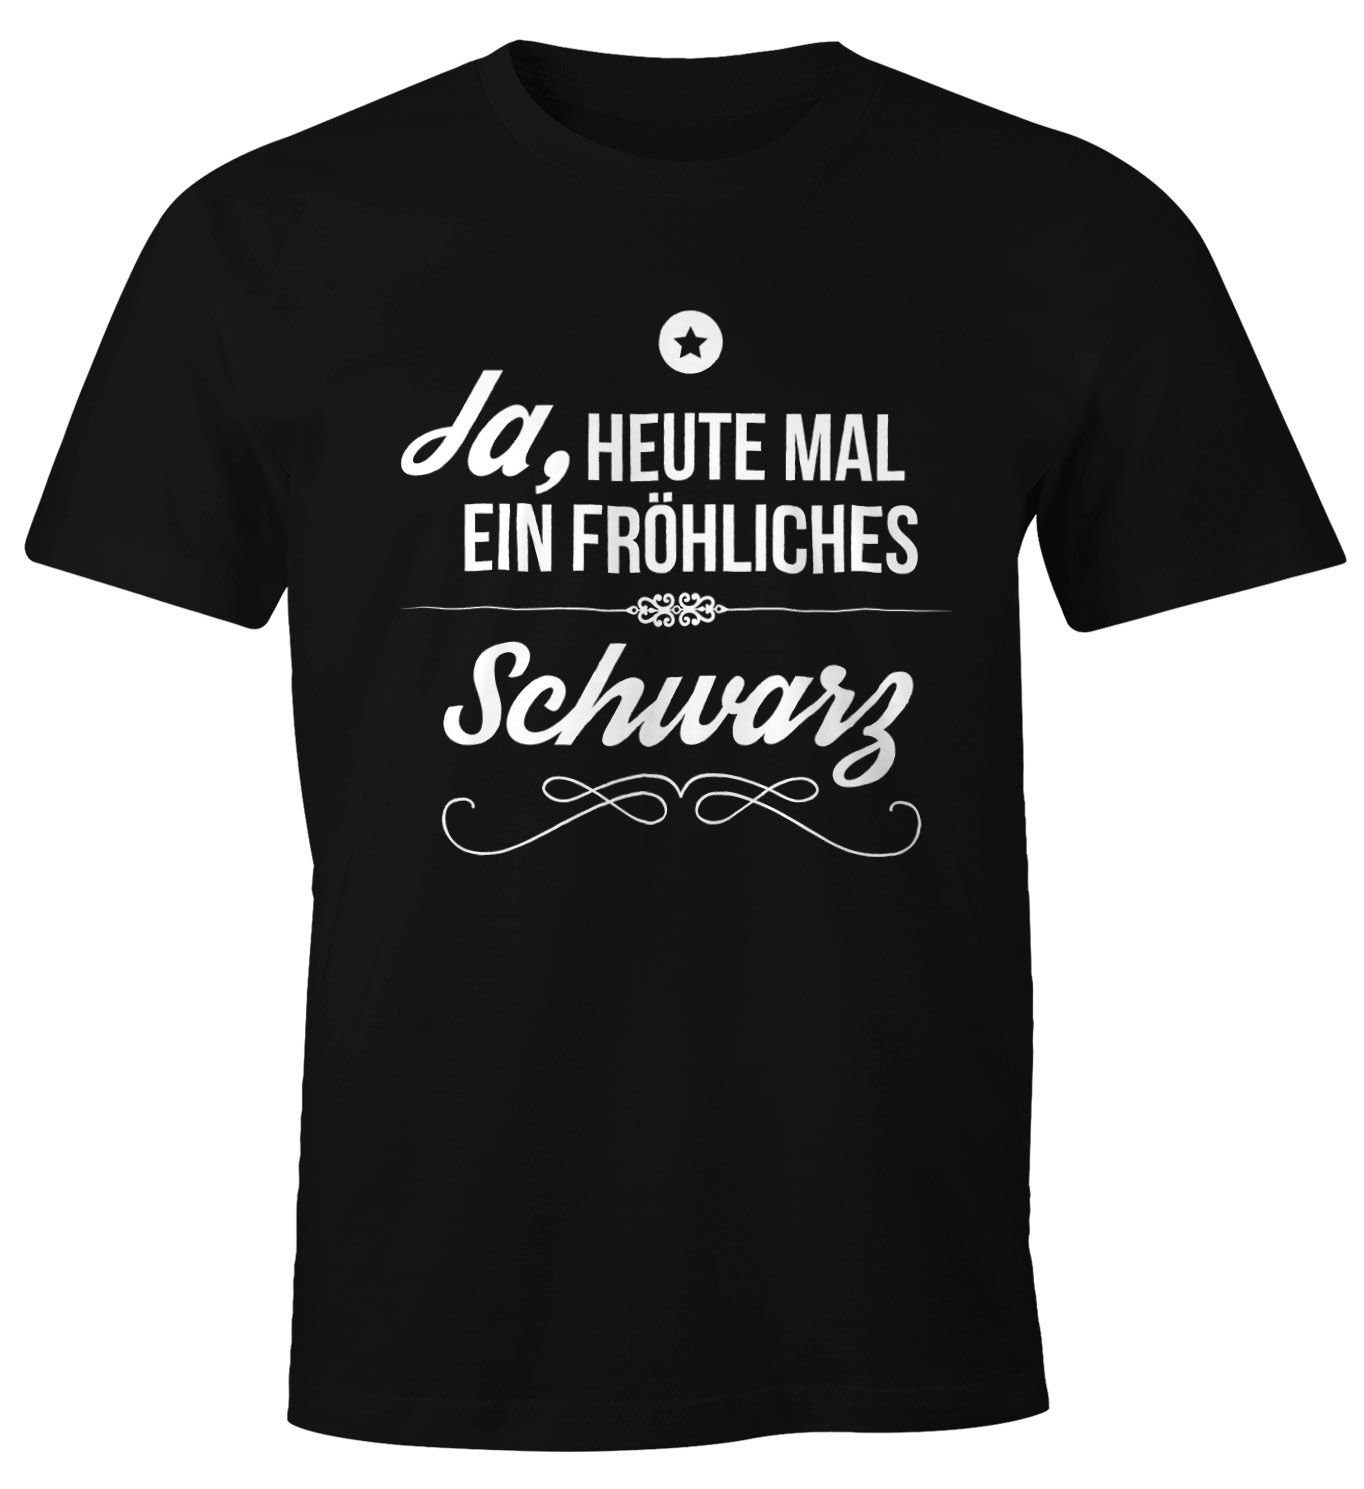 MoonWorks Print-Shirt Herren T-Shirt Ja heute mal ein fröhliches schwarz Spruch  Shirt Witzig Moonworks mit Print